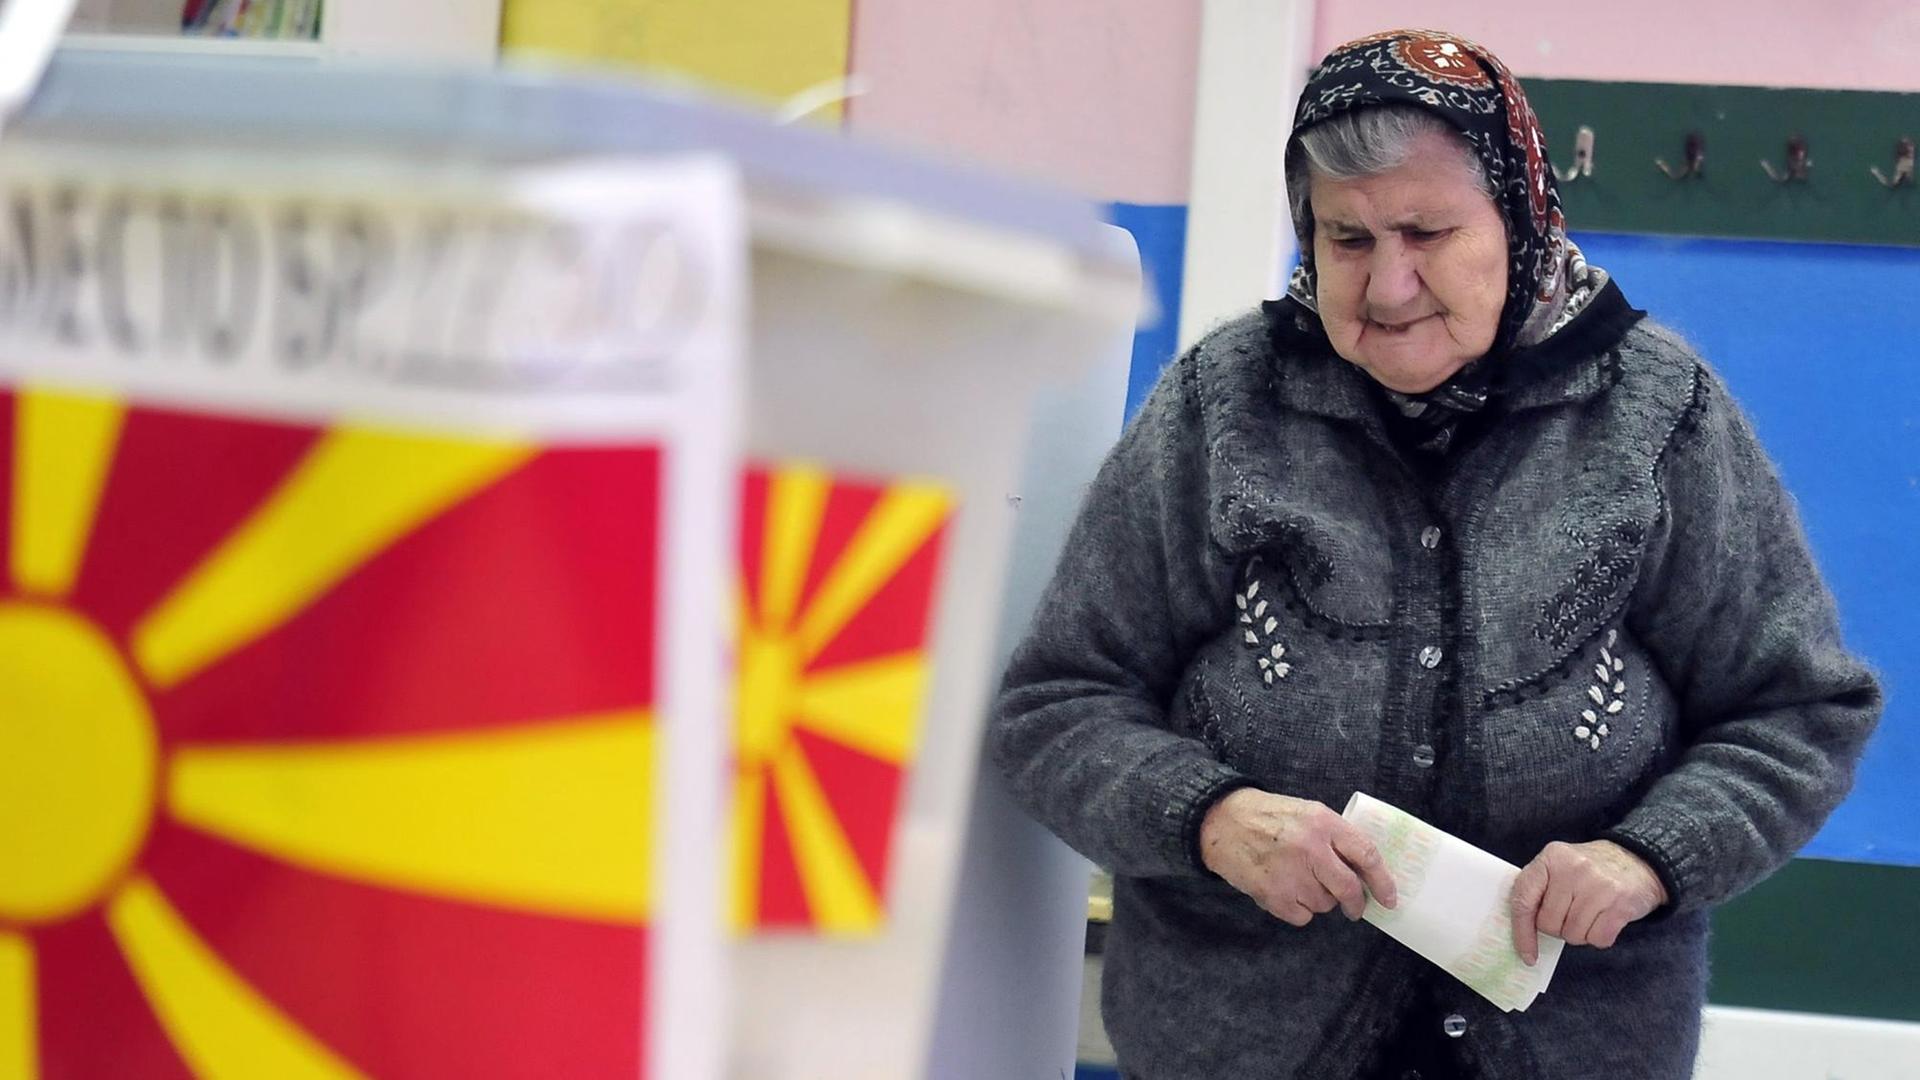 Eine ältere Frau mit Kopftuch kommt aus einer Wahlkabine heraus, den Stimmzettel in der Hand.